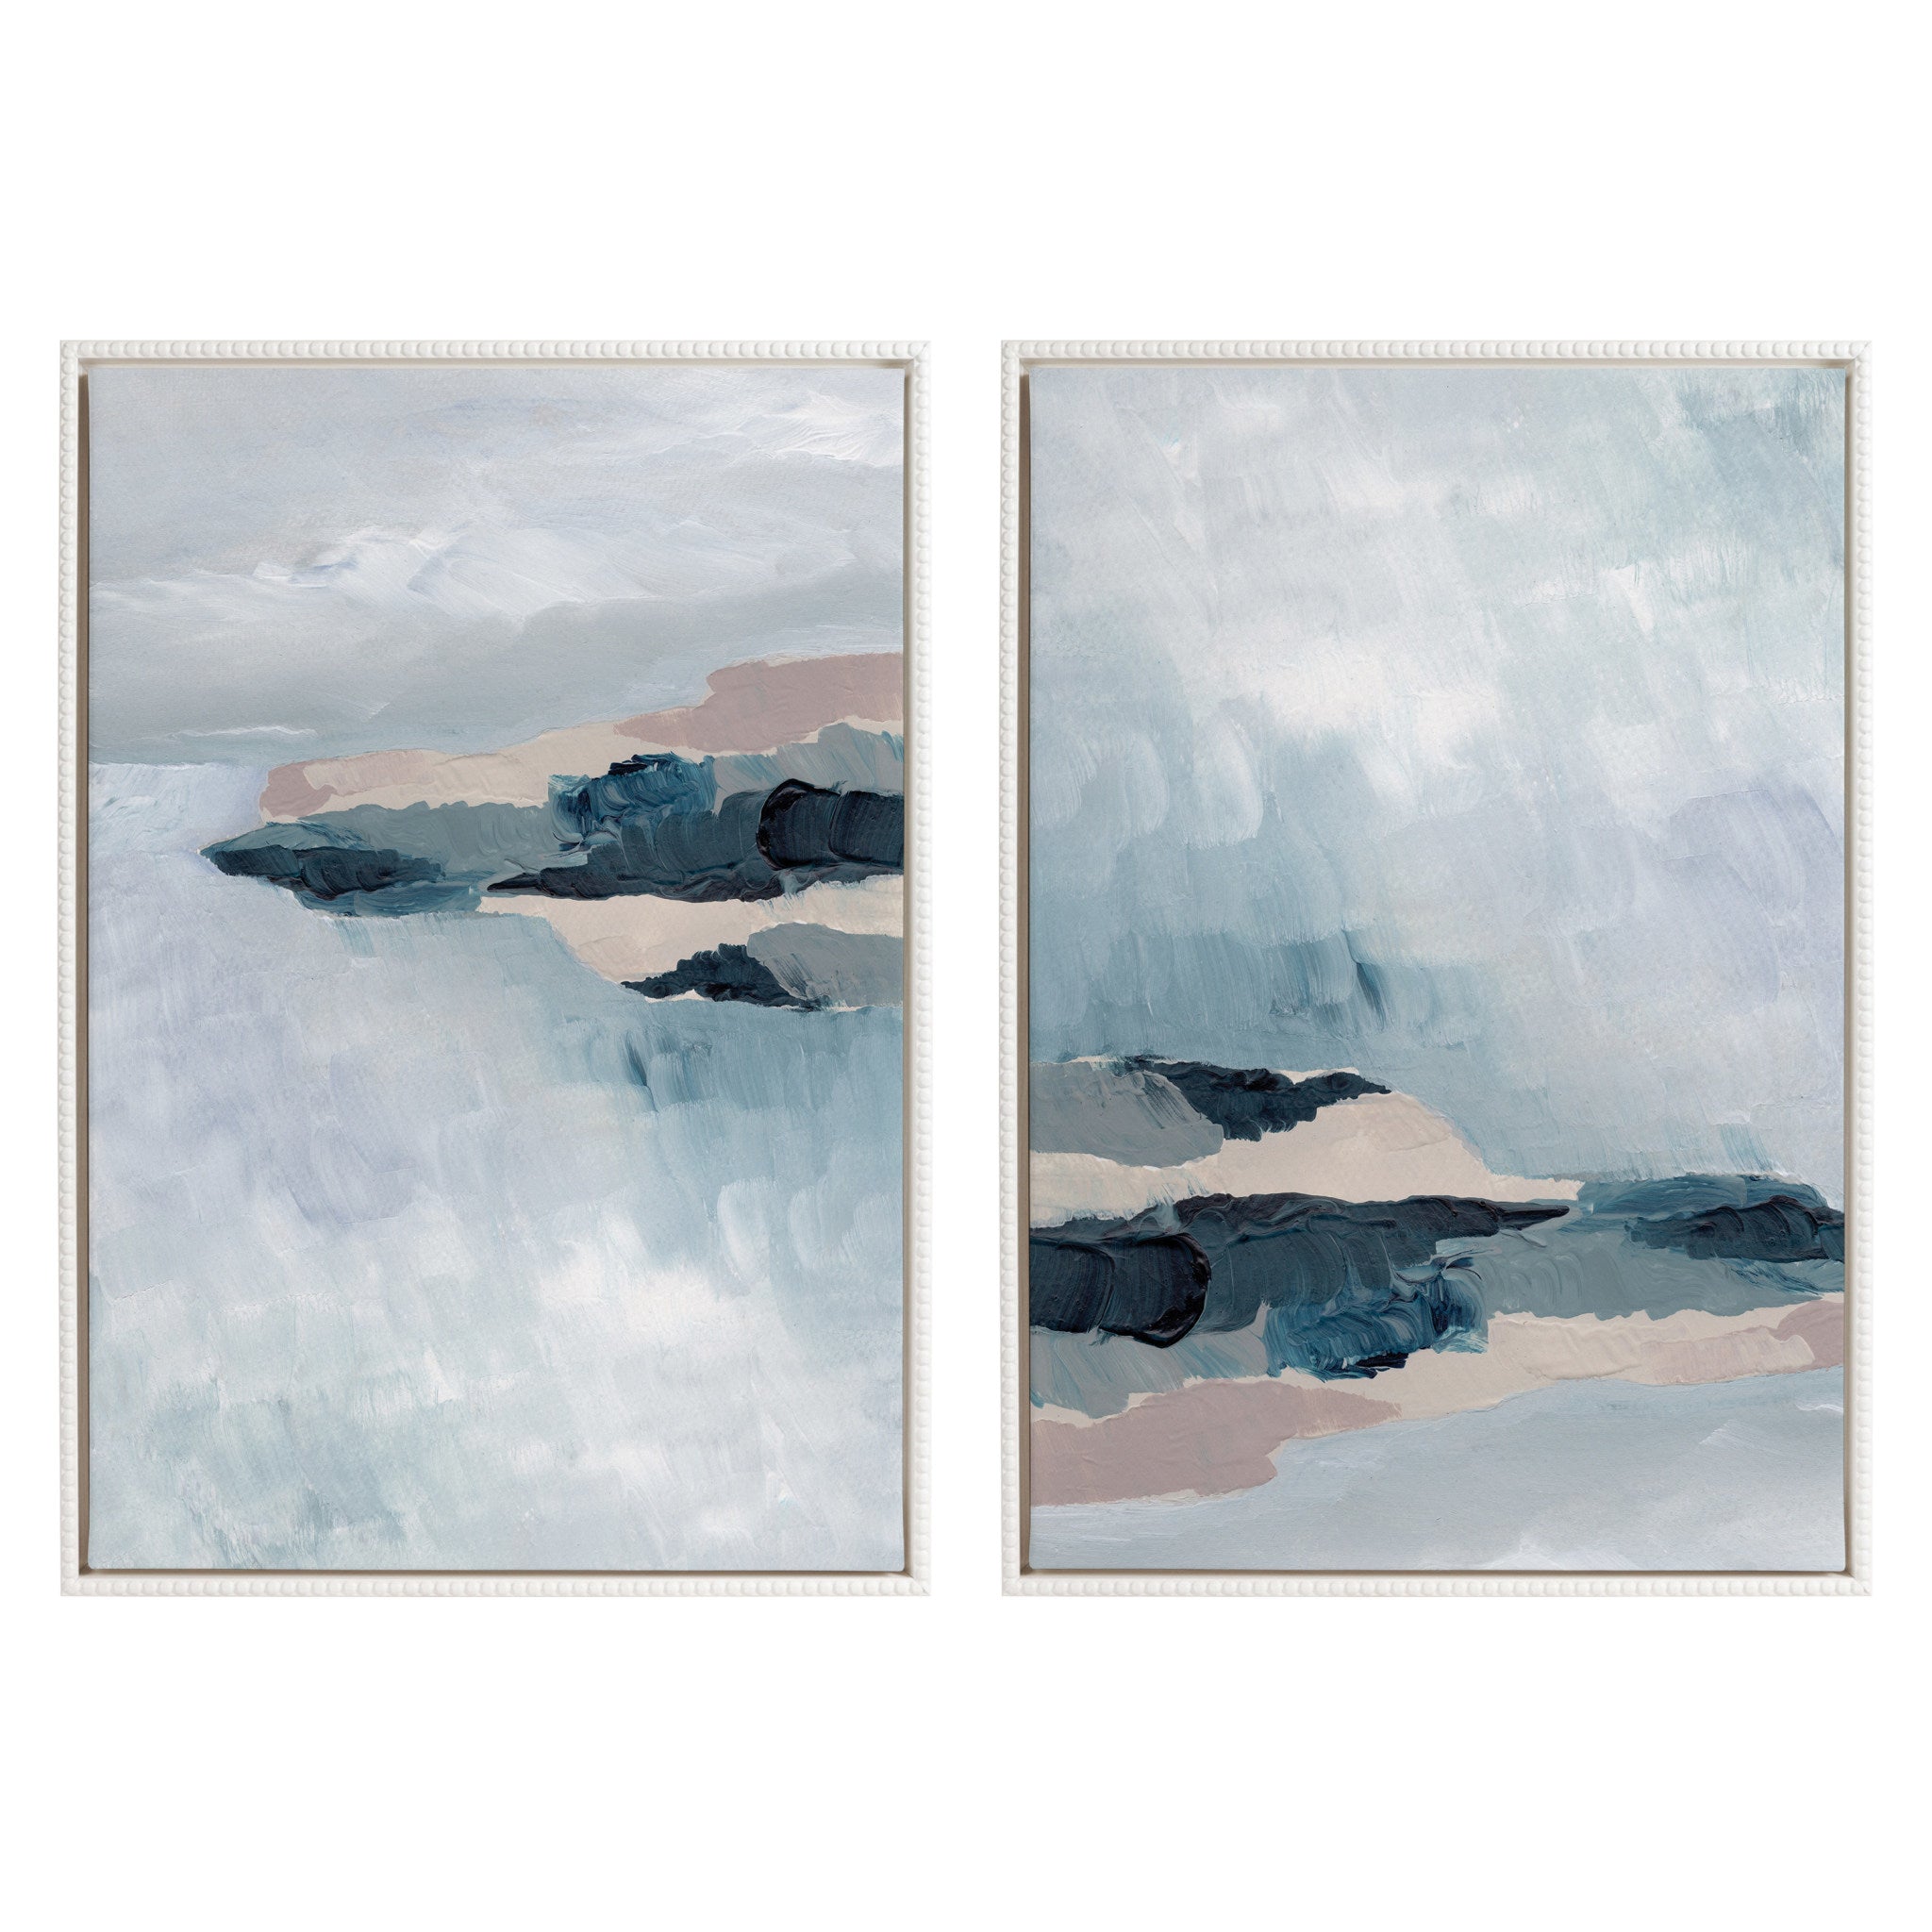 Sylvie Beaded Coast 2 v1 and Coast 2 v2 Framed Canvas Art Set by Nikita Jariwala